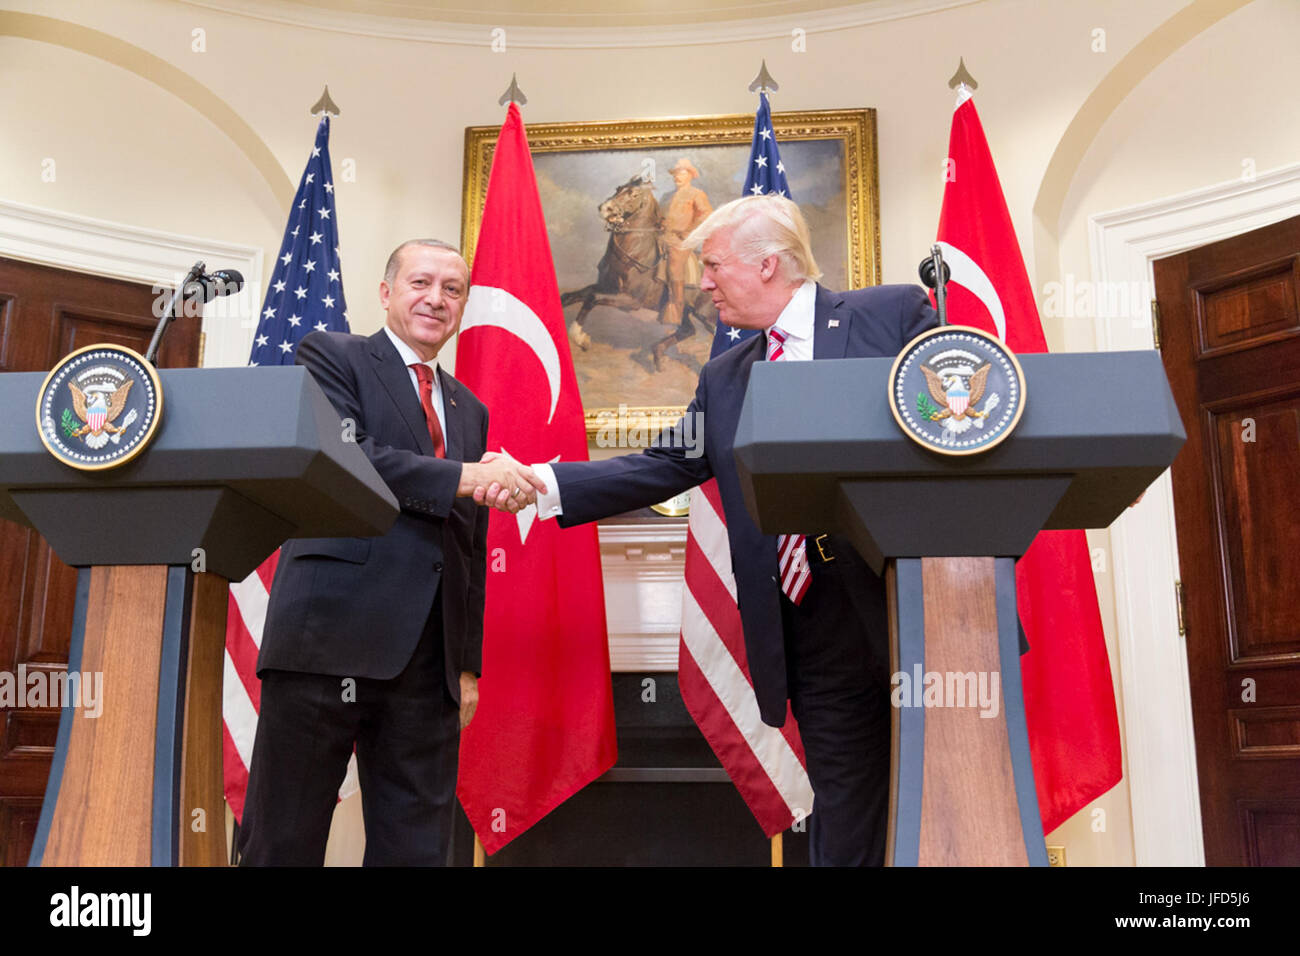 Président et président d'Atout Erdoğan donner une déclaration conjointe dans la Roosevelt Room à la Maison Blanche, le mardi 16 mai 2017 à Washington, D.C. (Official White House Photo by Shealah Craighead). Banque D'Images